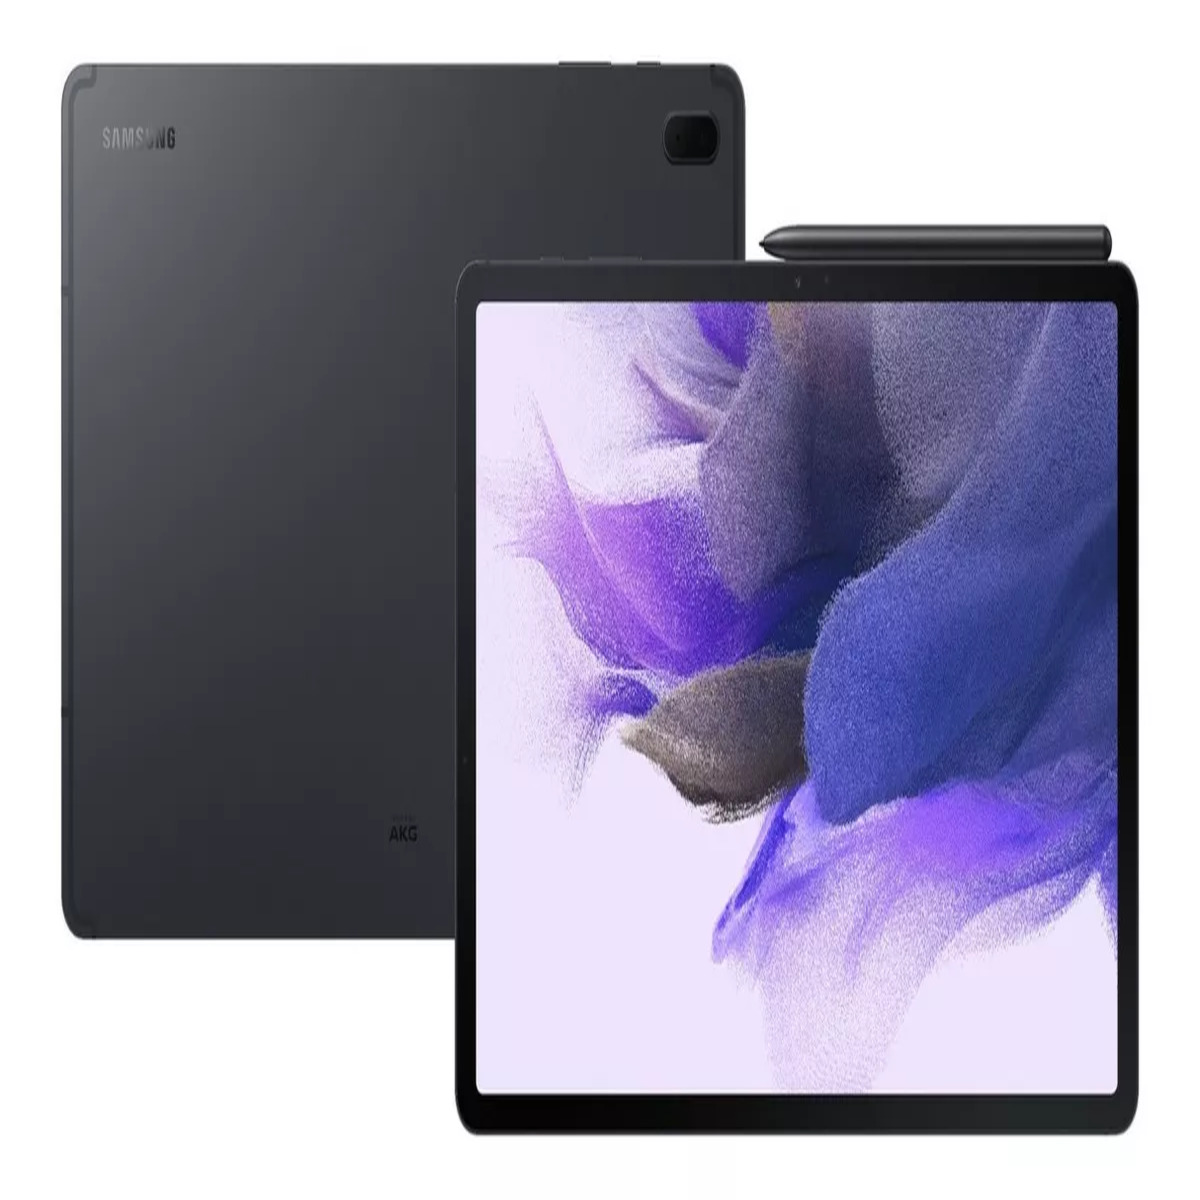  Samsung Galaxy Tab S7 FE 2021 Tablet Android con pantalla de  12.4 pulgadas, WiFi 64GB S Pen Incluida Batería de Larga Duración Potente  Rendimiento, Negro Místico : Electrónica